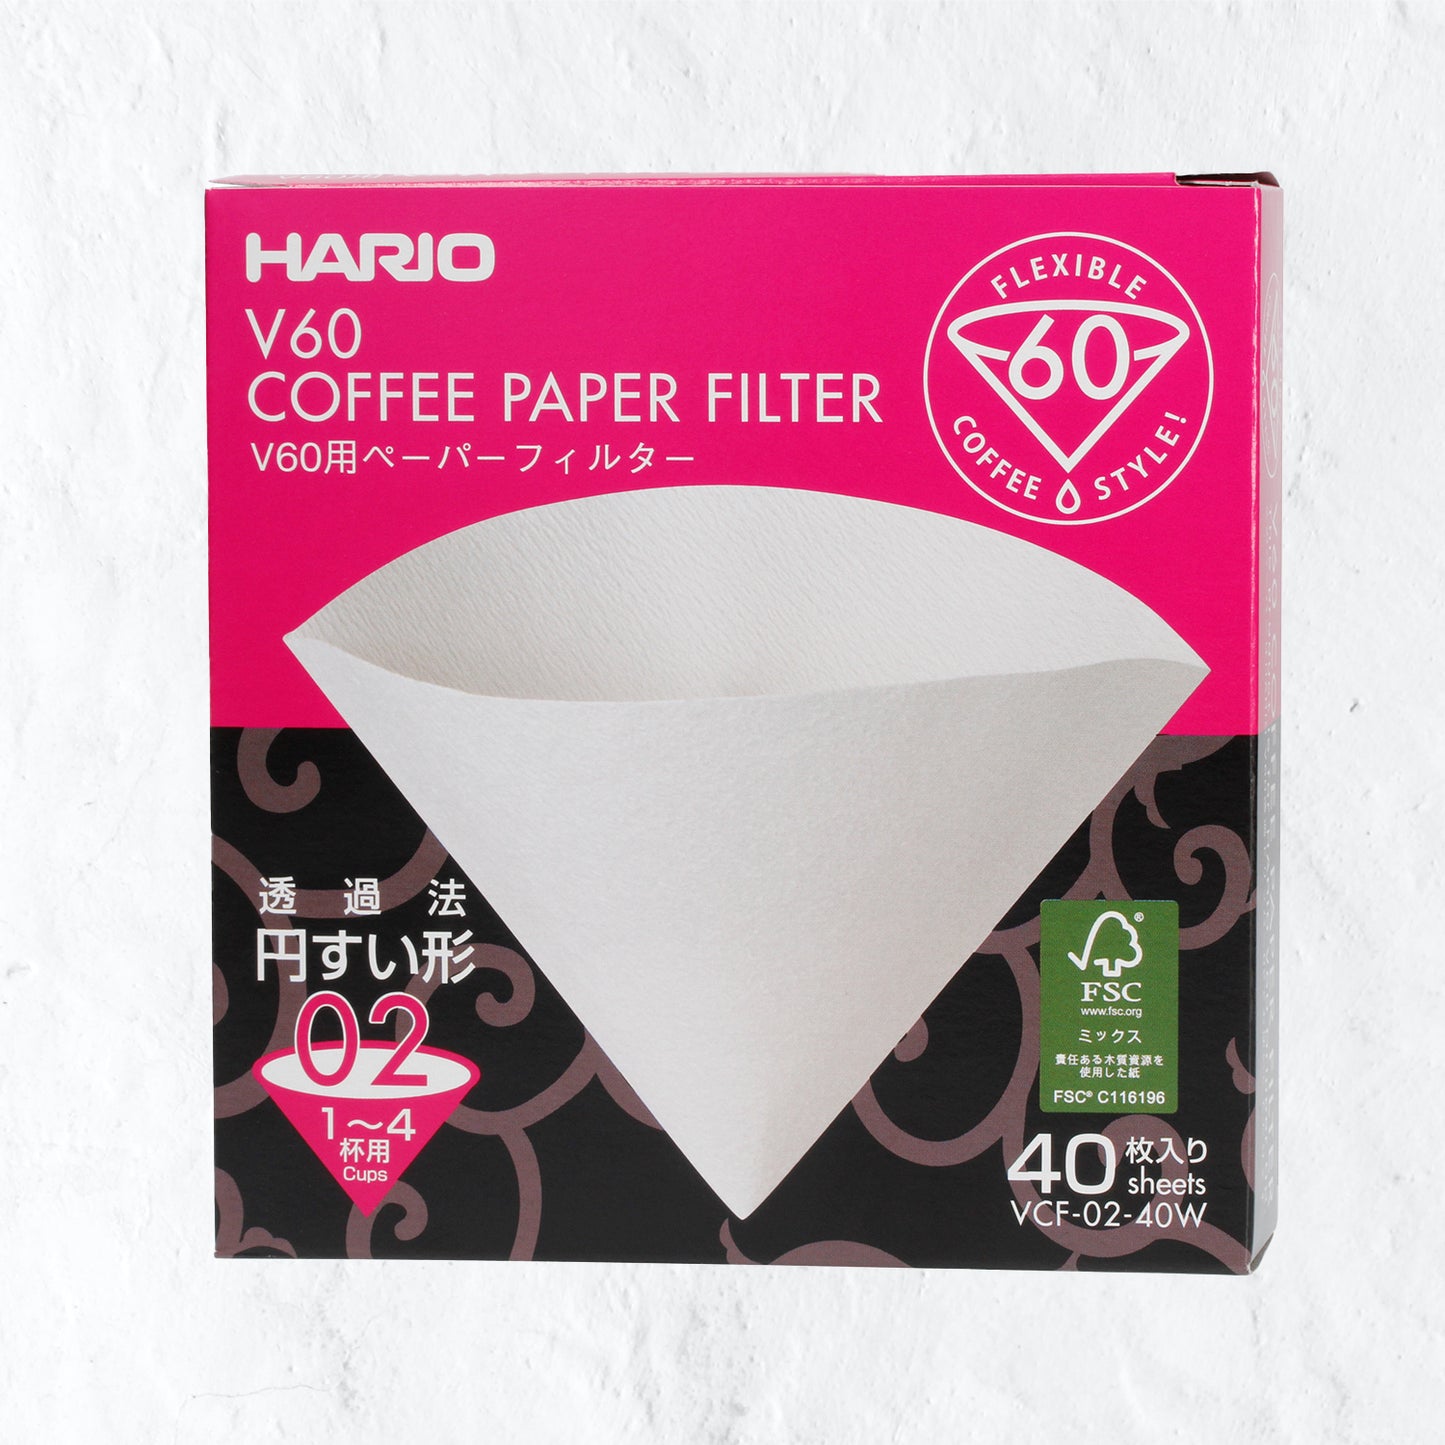 Hario paper filter - V60-02/40